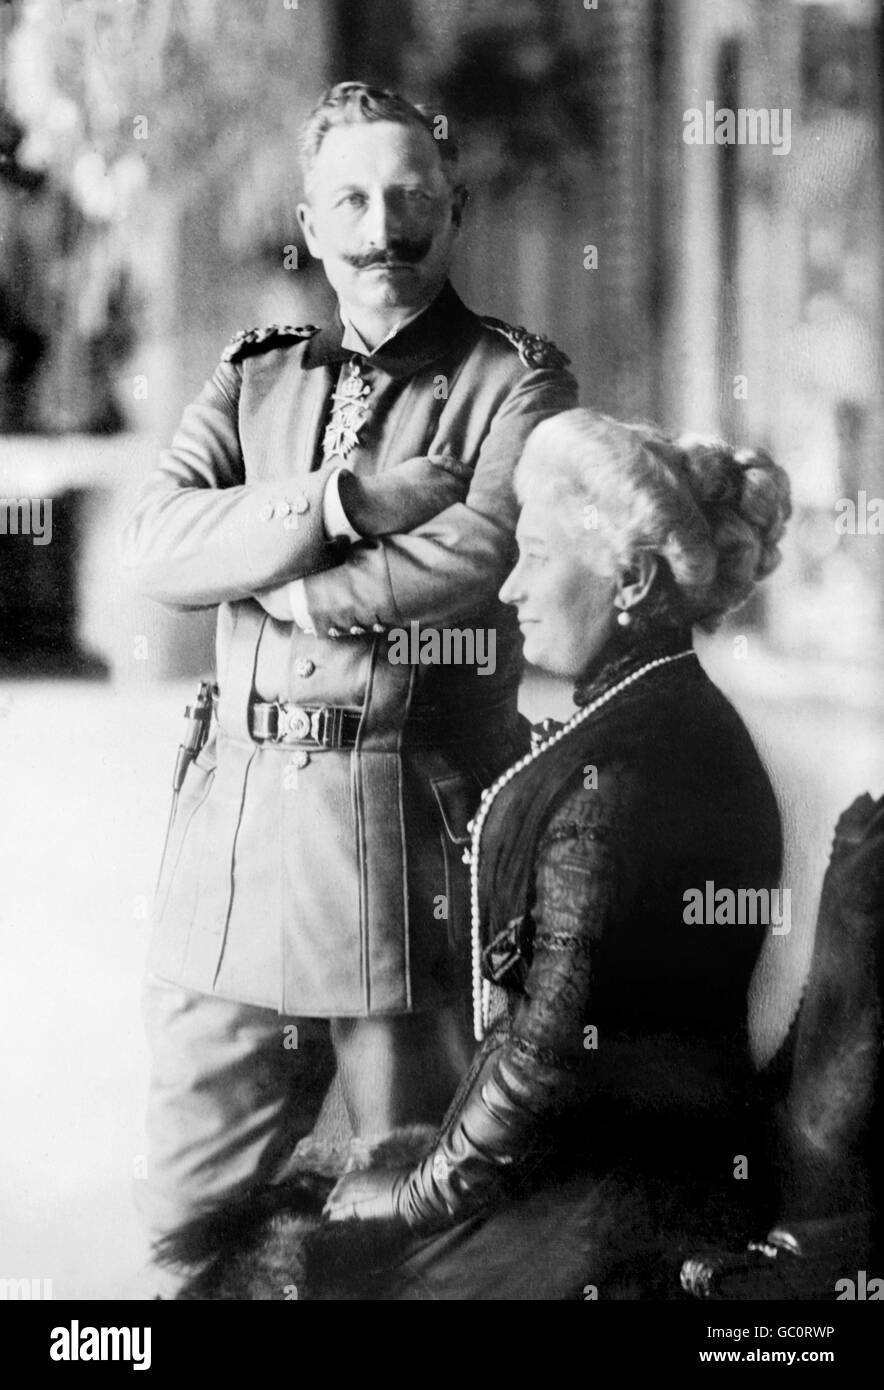 Portrait de l'empereur Guillaume II (1859-1941), Empereur d'Allemagne et roi de Prusse, et son épouse, Kaiserin Augusta Victoria. Photo de Bain News Service, c.1910-1915. Banque D'Images